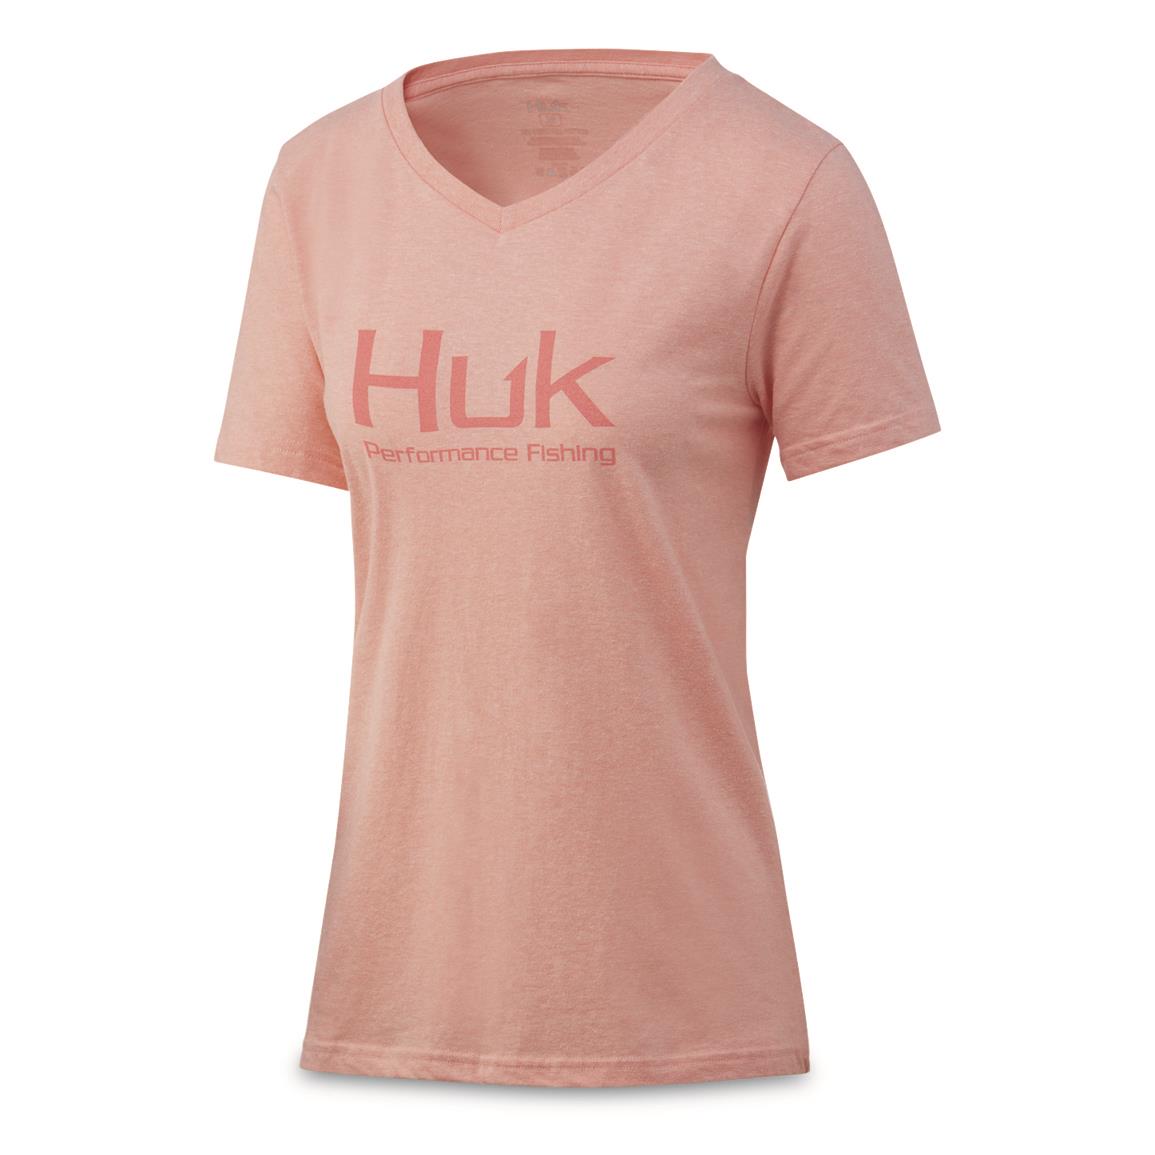 Huk Women's Performance Fishing Logo V-Neck T-Shirt, Desert Flower Heather